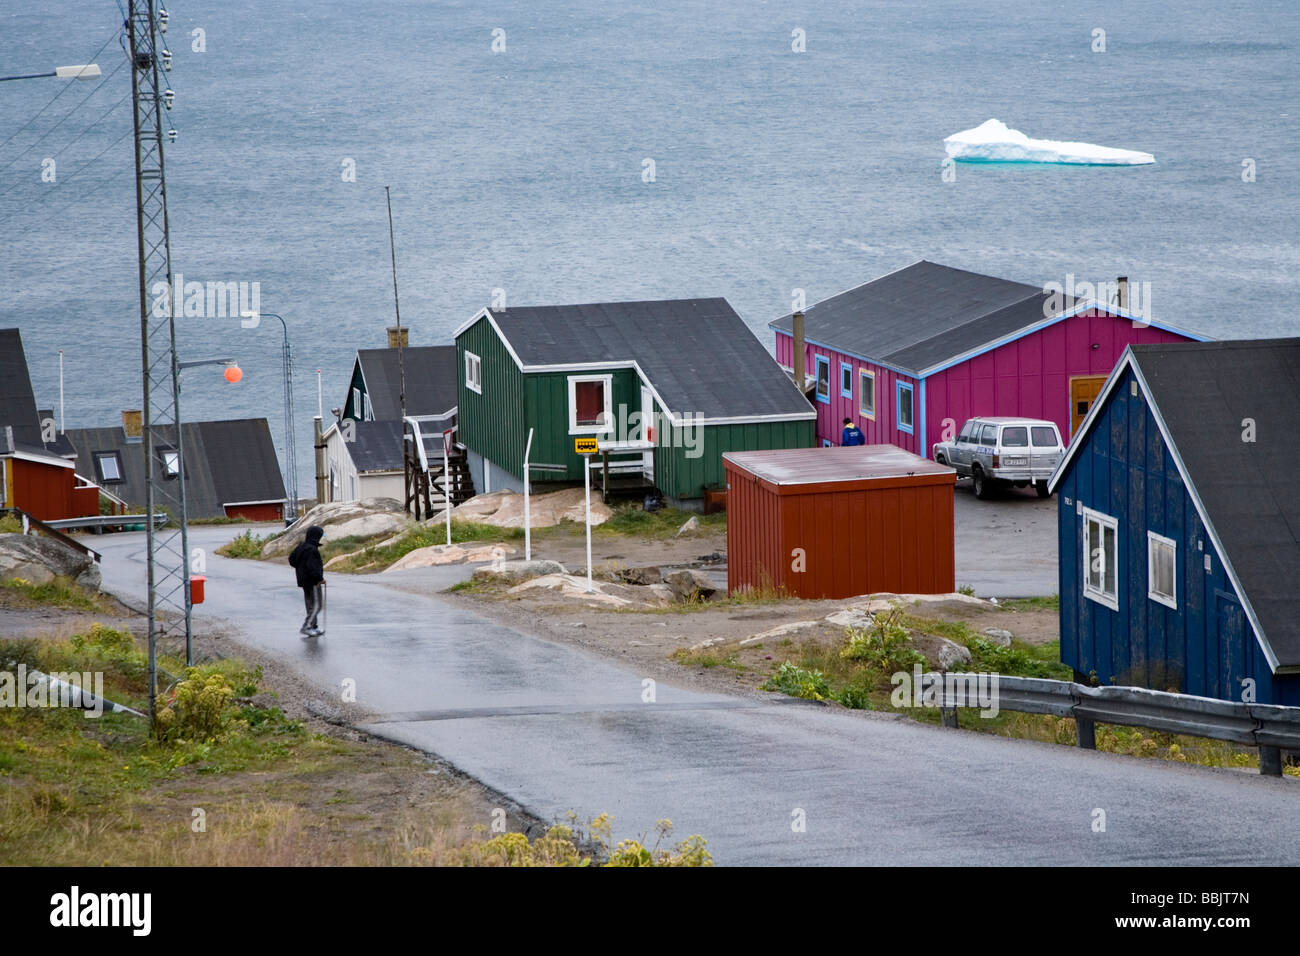 L'homme de traverser la rue, maisons colorées et d'iceberg. Qaqortoq (Julianehåb), le sud du Groenland Banque D'Images